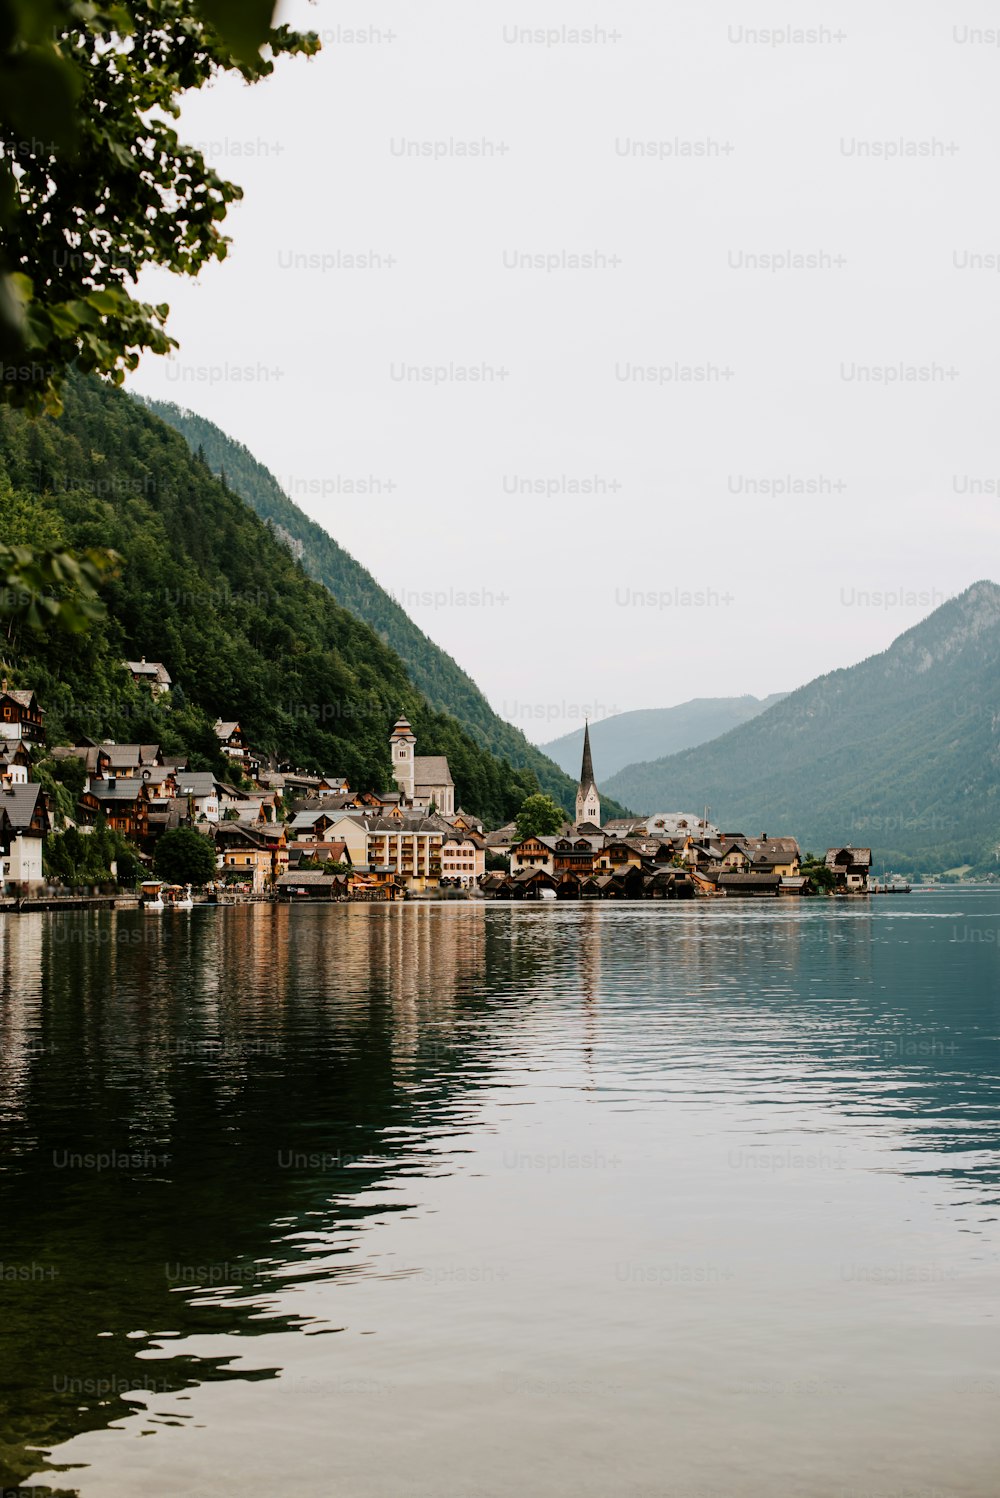 Un petit village sur un lac entouré de montagnes